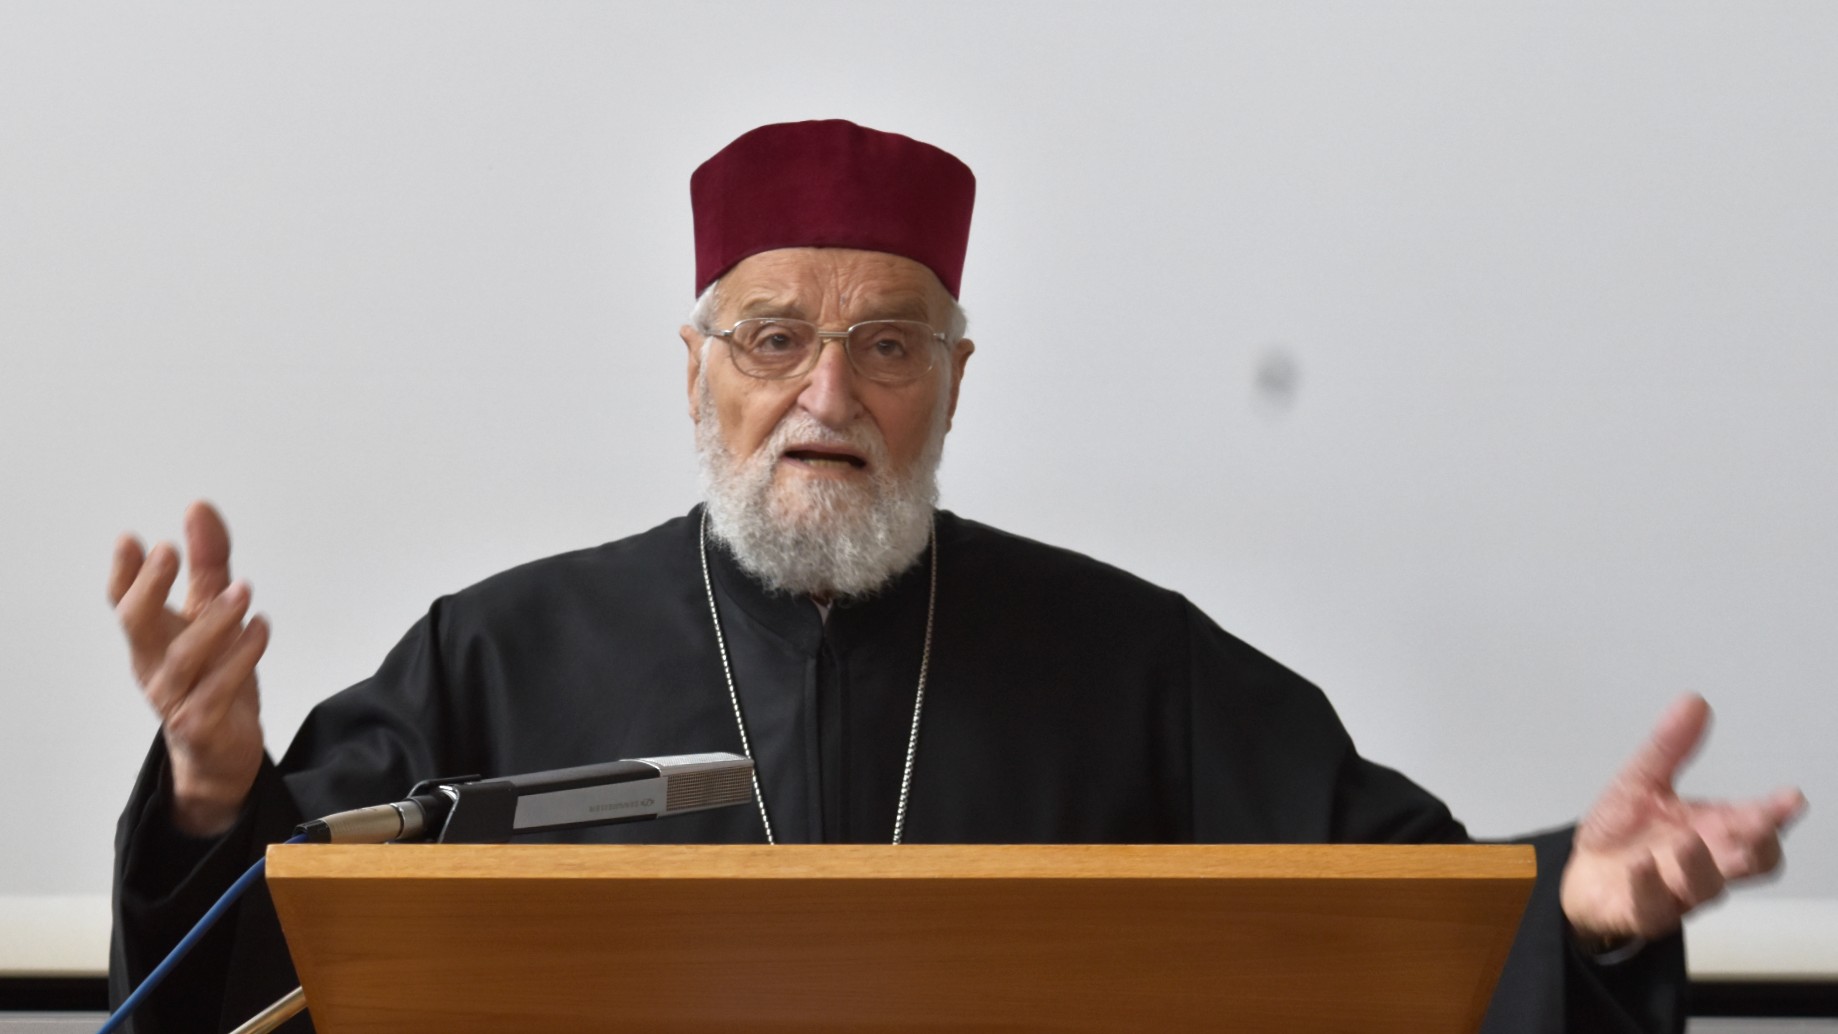 Le patriarche émérite Grégoire III fustige les sanctions contre le peuple syrien à l'Université de Fribourg  |  © Jacques Berset